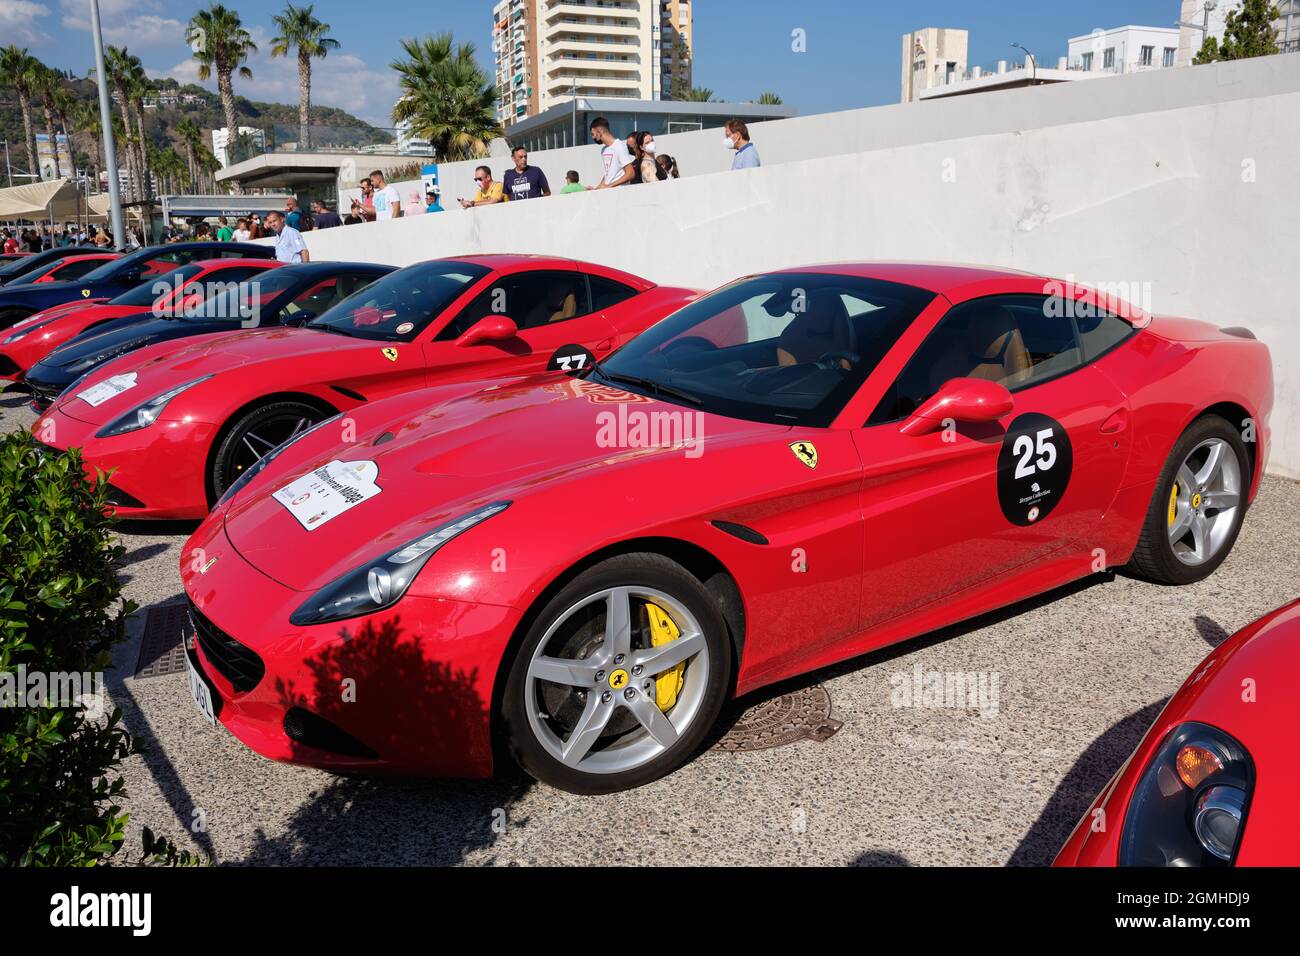 Ferrari Event, des roars de solidarité pour soutenir le travail social de l'Association Lagunillas-Centro. Port de Malaga, Espagne. Banque D'Images